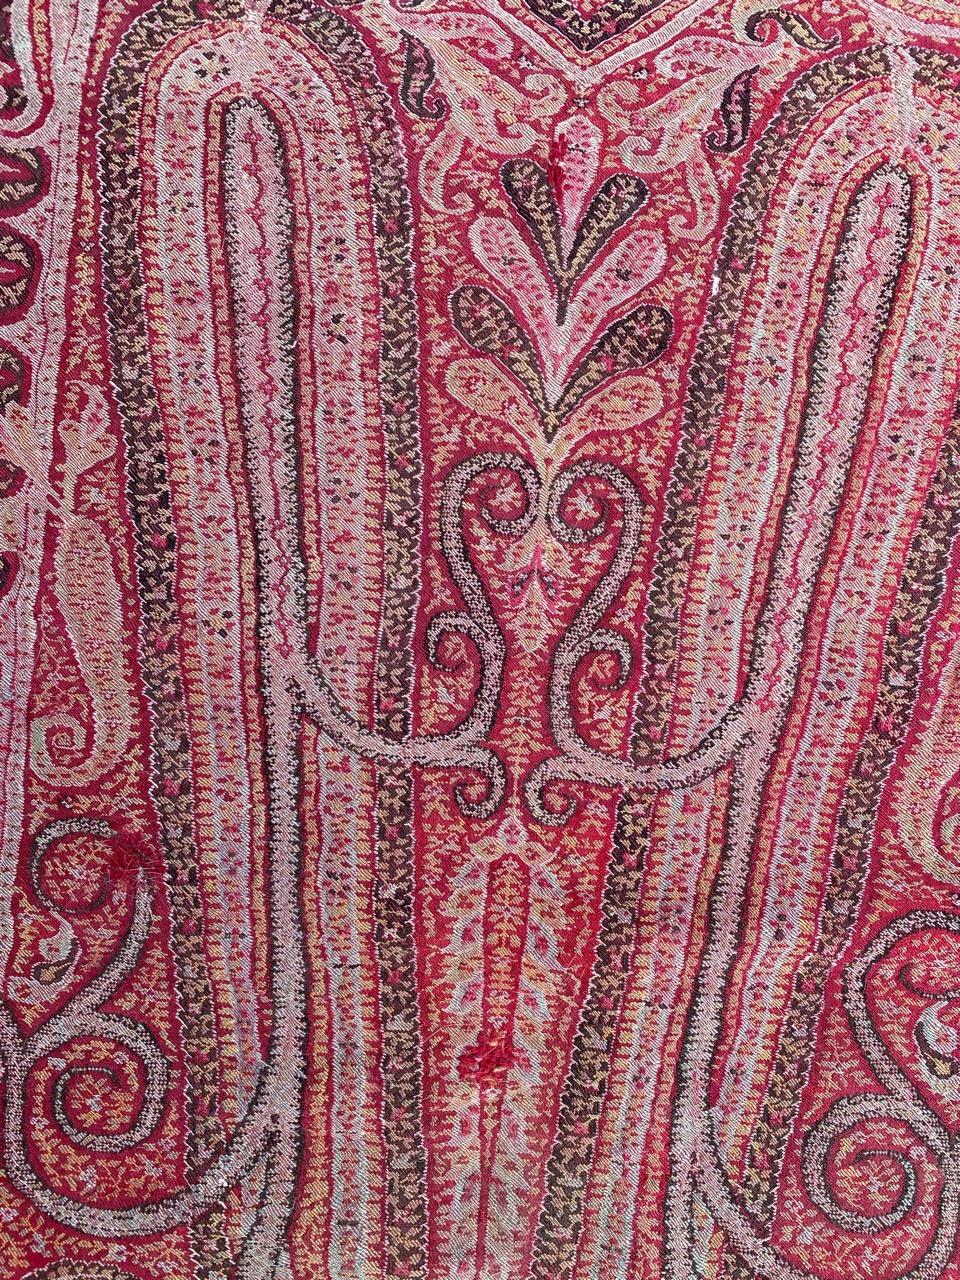 Silk Pretty Antique Kashmir Shawl Fragment